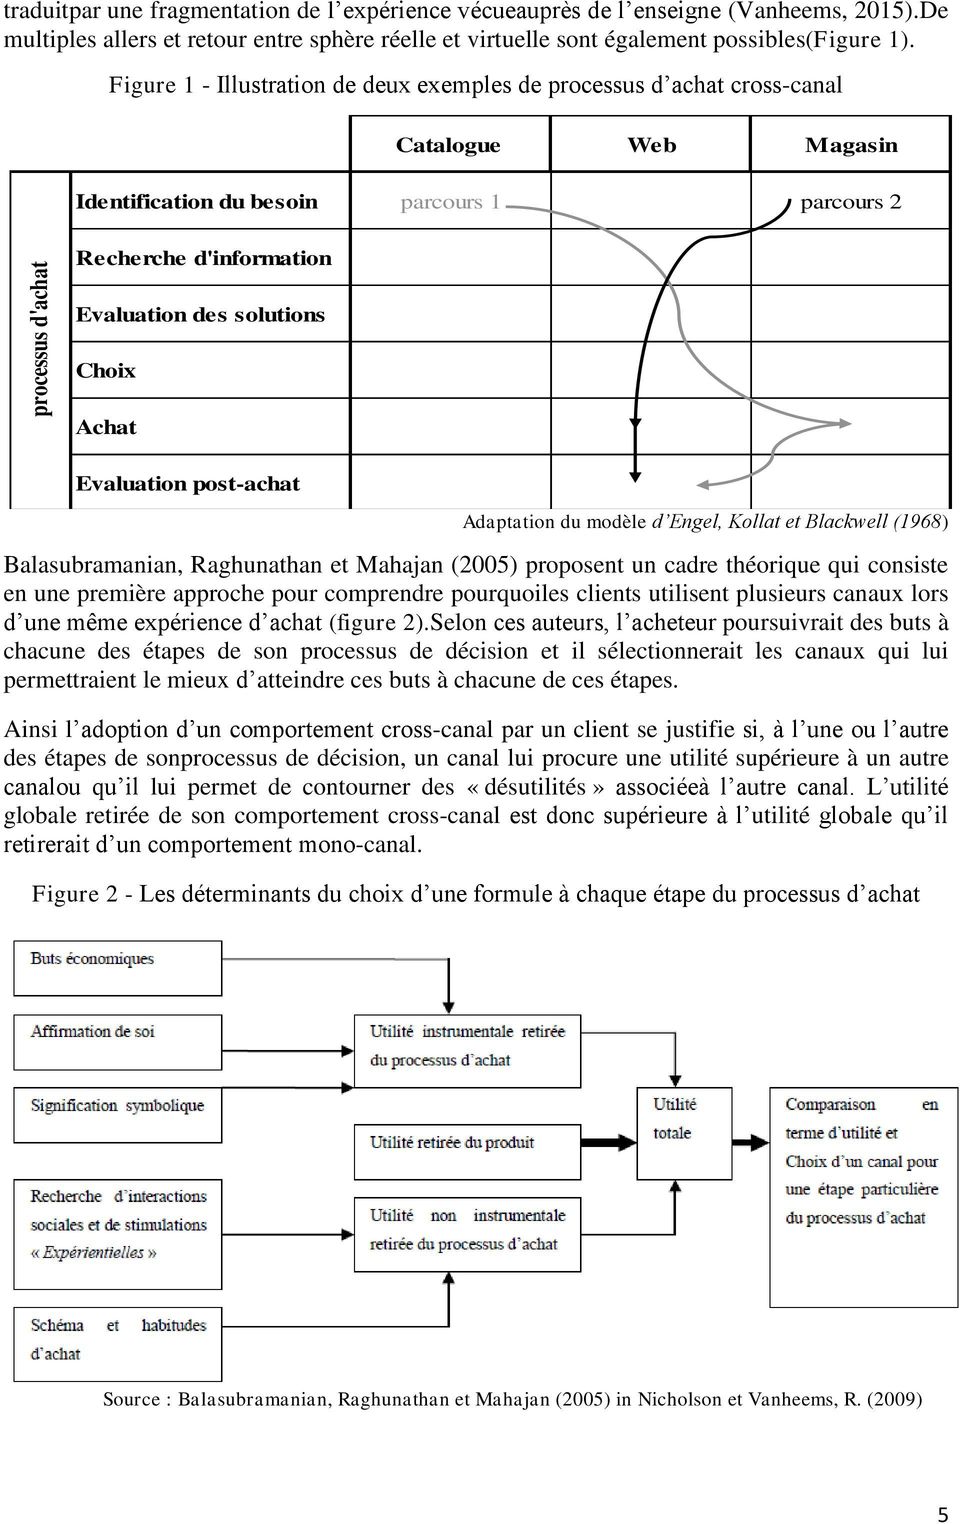 Figure 1 - Illustration de deux exemples de processus d achat cross-canal Catalogue Web Magasin Identification du besoin parcours 1 parcours 2 Recherche d'information Evaluation des solutions Choix